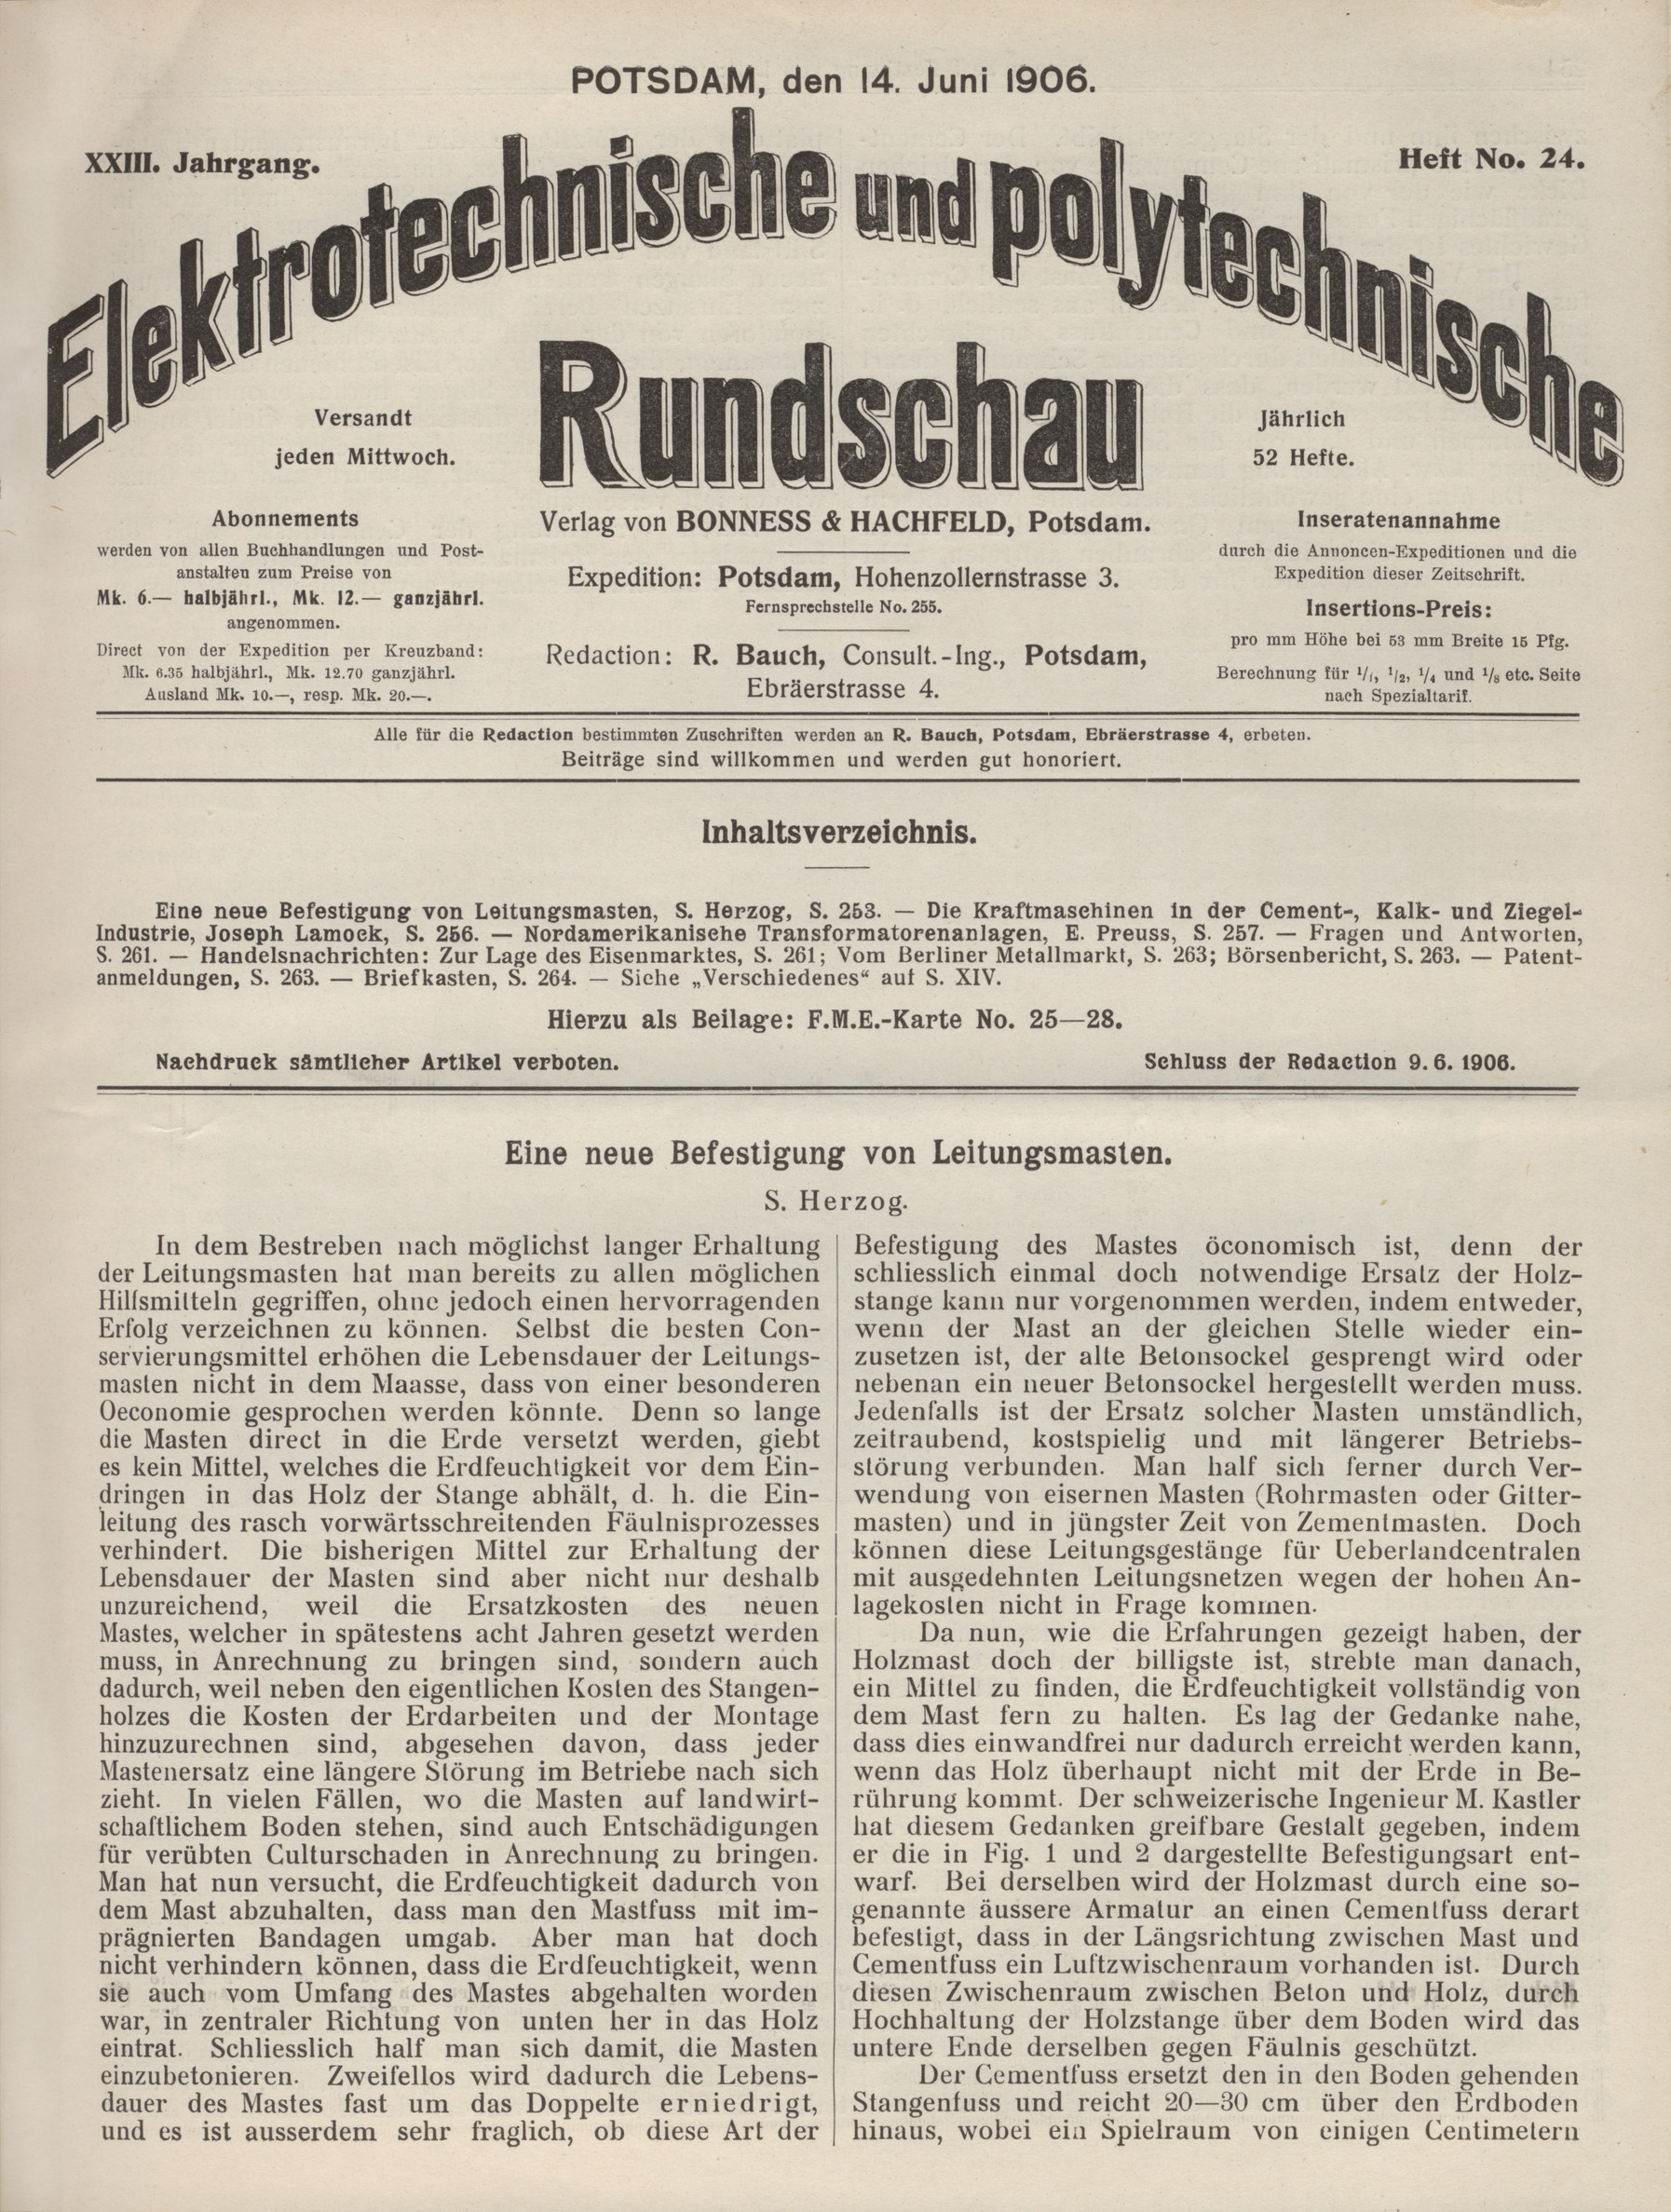 Elektrotechnische und polytechnische Rundschau, XXIII. Jahrgang, Heft No. 24